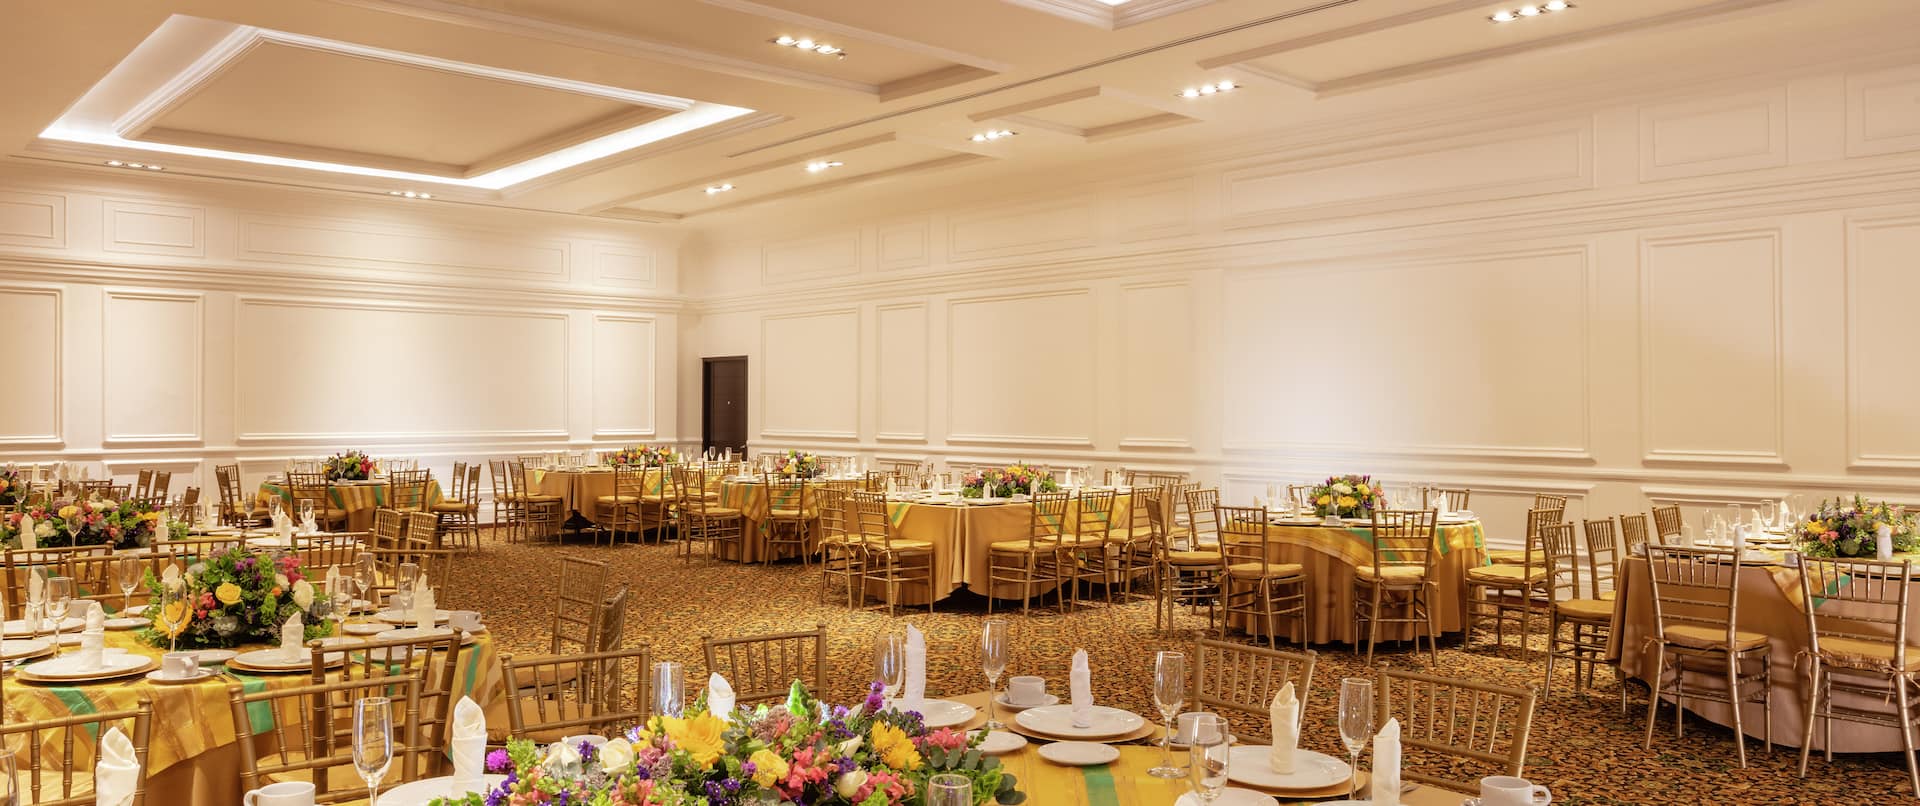 Elegante espacio para banquetes y eventos con mesas de comedor y cubiertos 